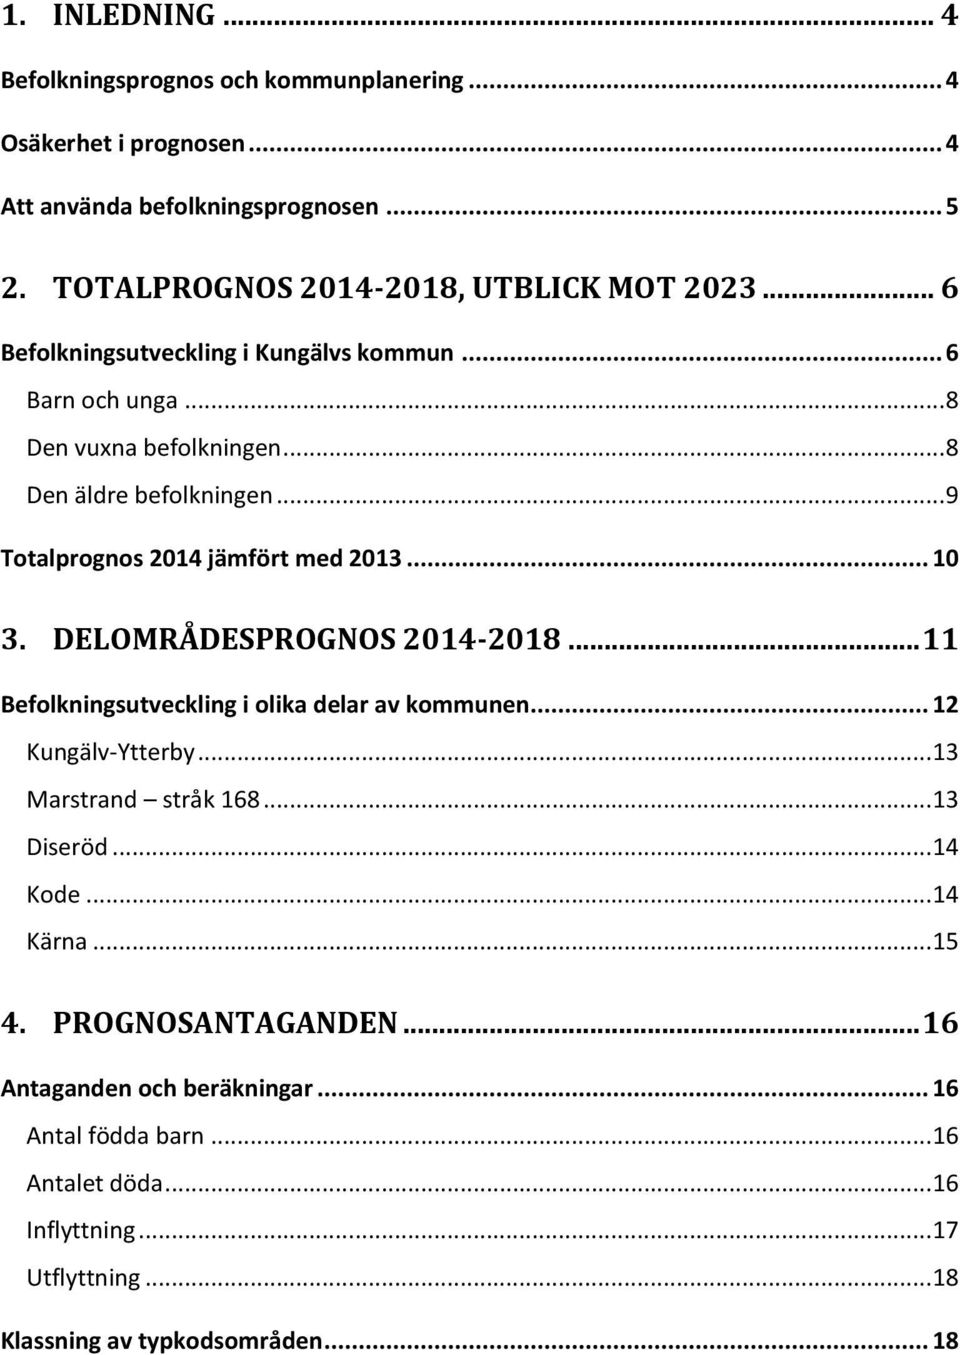 DELOMRÅDESPROGNOS 2014-2018... 11 Befolkningsutveckling i olika delar av kommunen... 12 Kungälv-Ytterby... 13 Marstrand stråk 168... 13 Diseröd... 14 Kode... 14 Kärna.